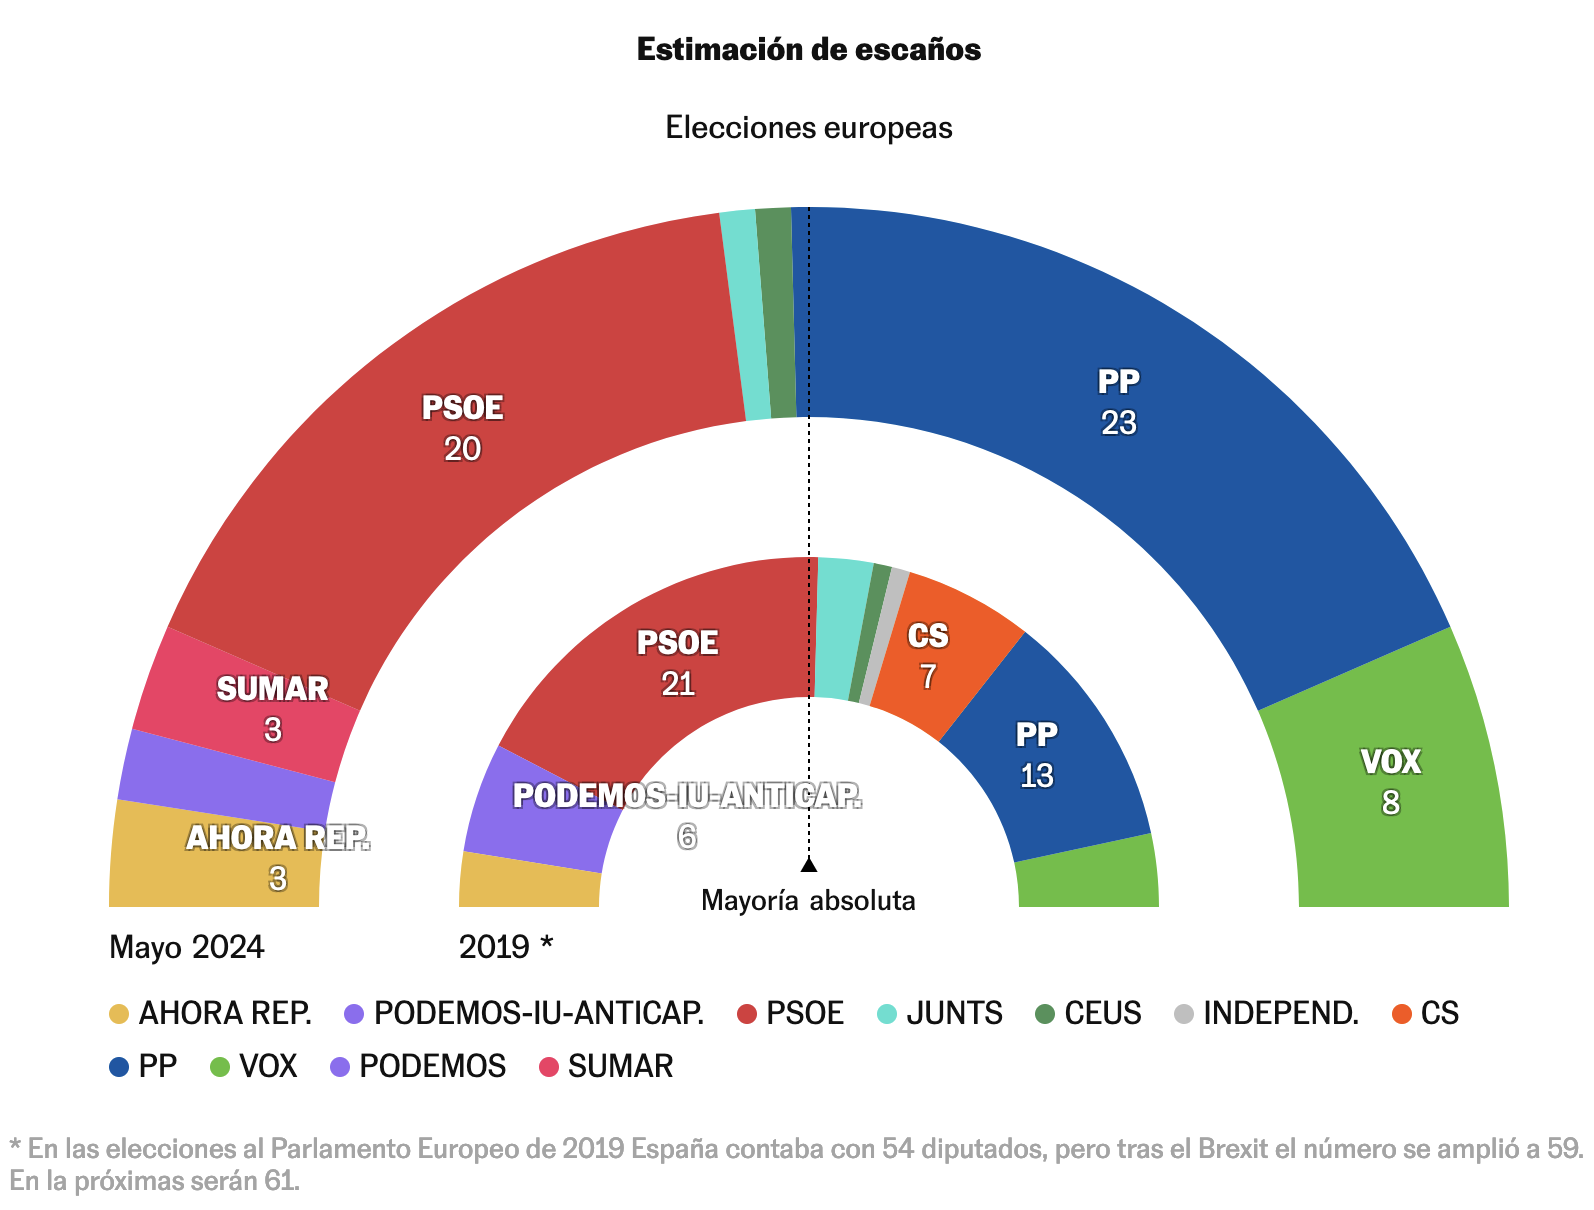 El PP redobla su presencia en Europa, el PSOE aguanta y Vox se dispara 